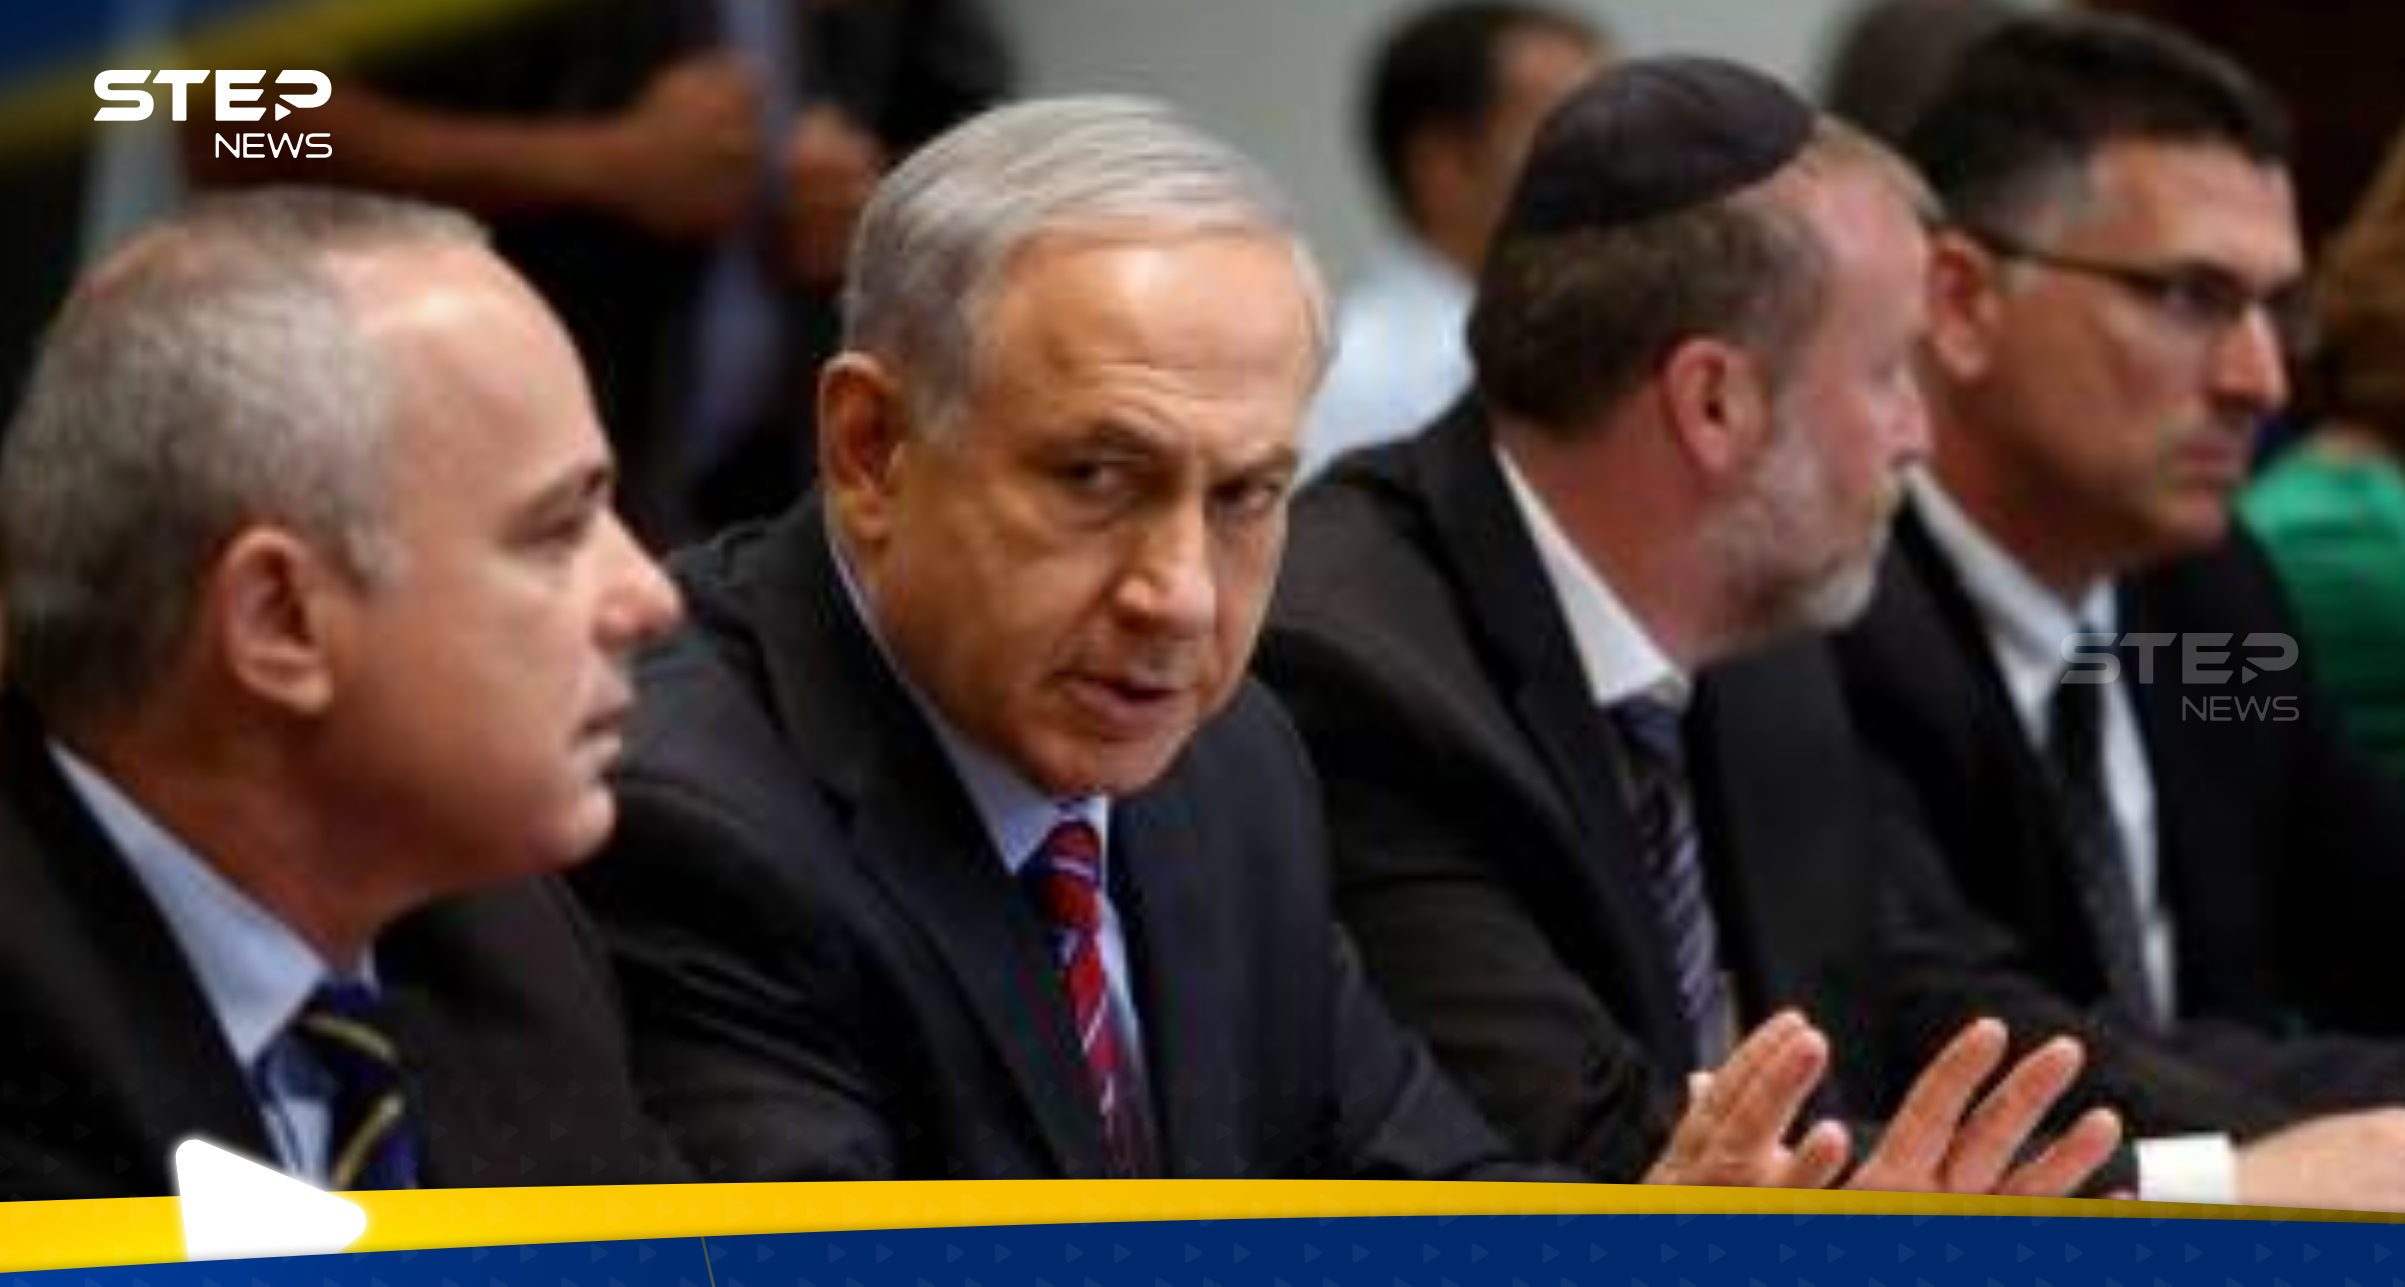 الوفد الإسرائيلي المفاوض بقطر يحصل على صلاحيات من مجلس الحرب